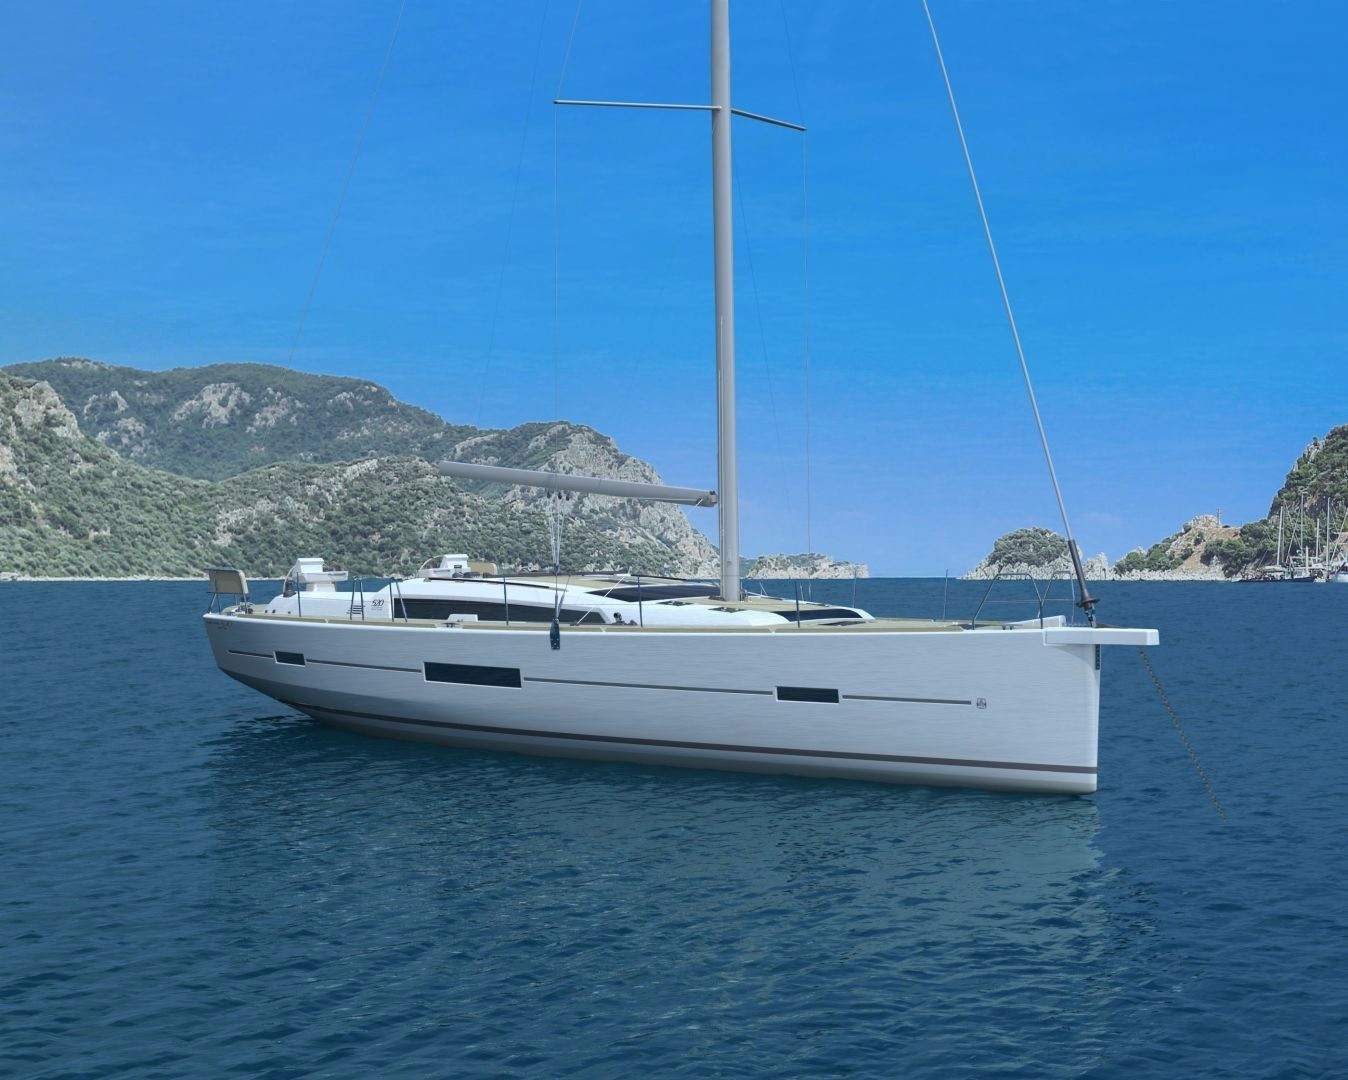 Dufour 520 GL - Sailboat Charter Corsica & Boat hire in France Corsica South Corsica Ajaccio Port Tino Rossi 1